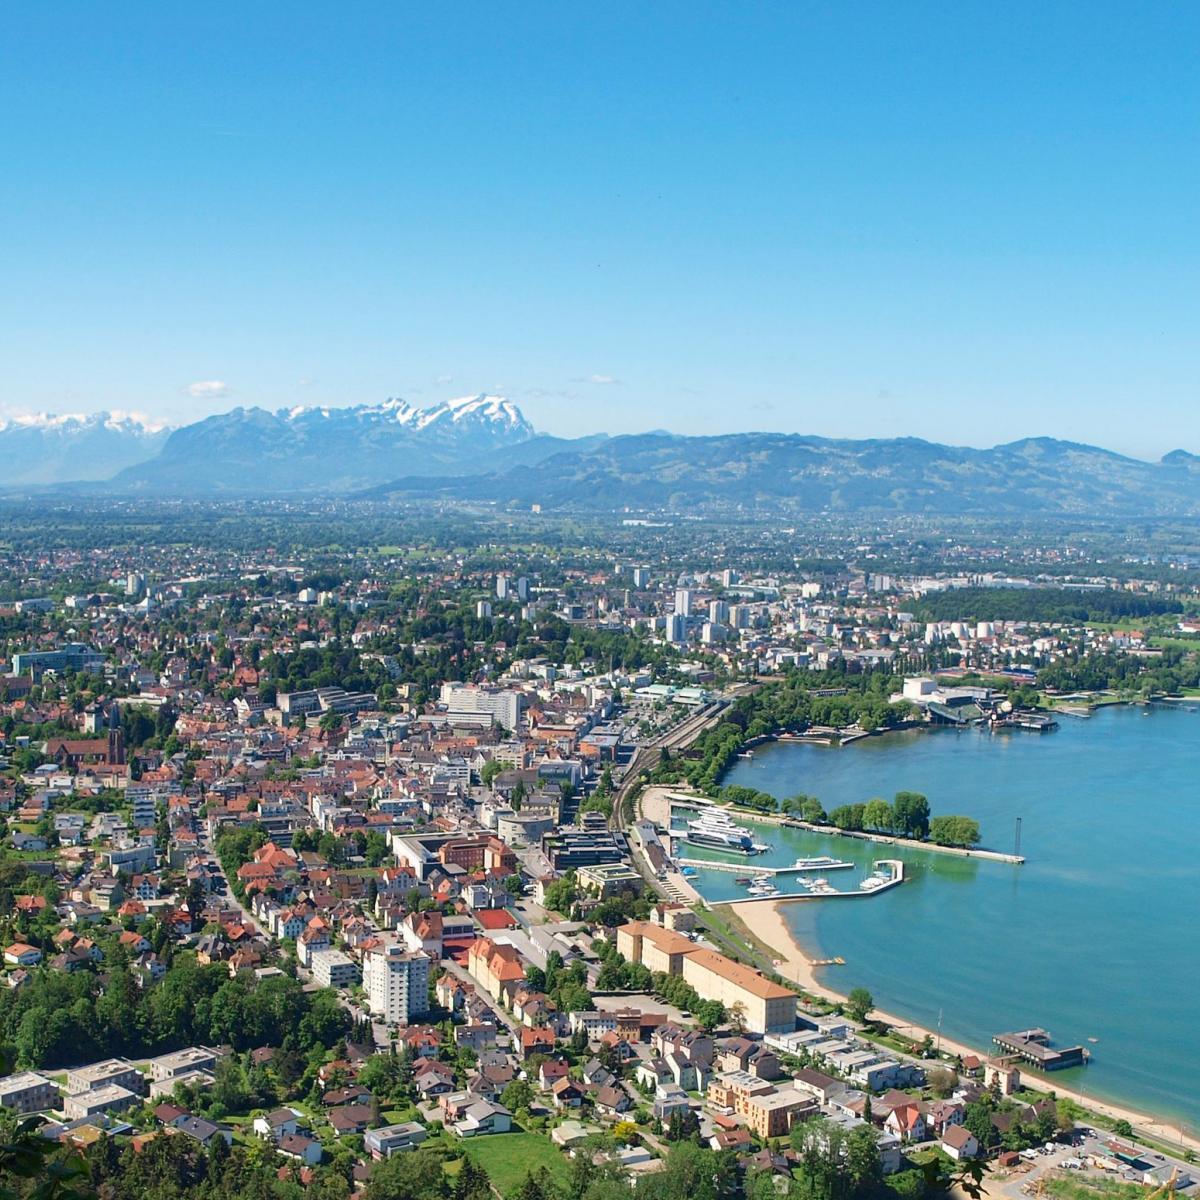 Panoramablick auf Bregenz und den Bodensee